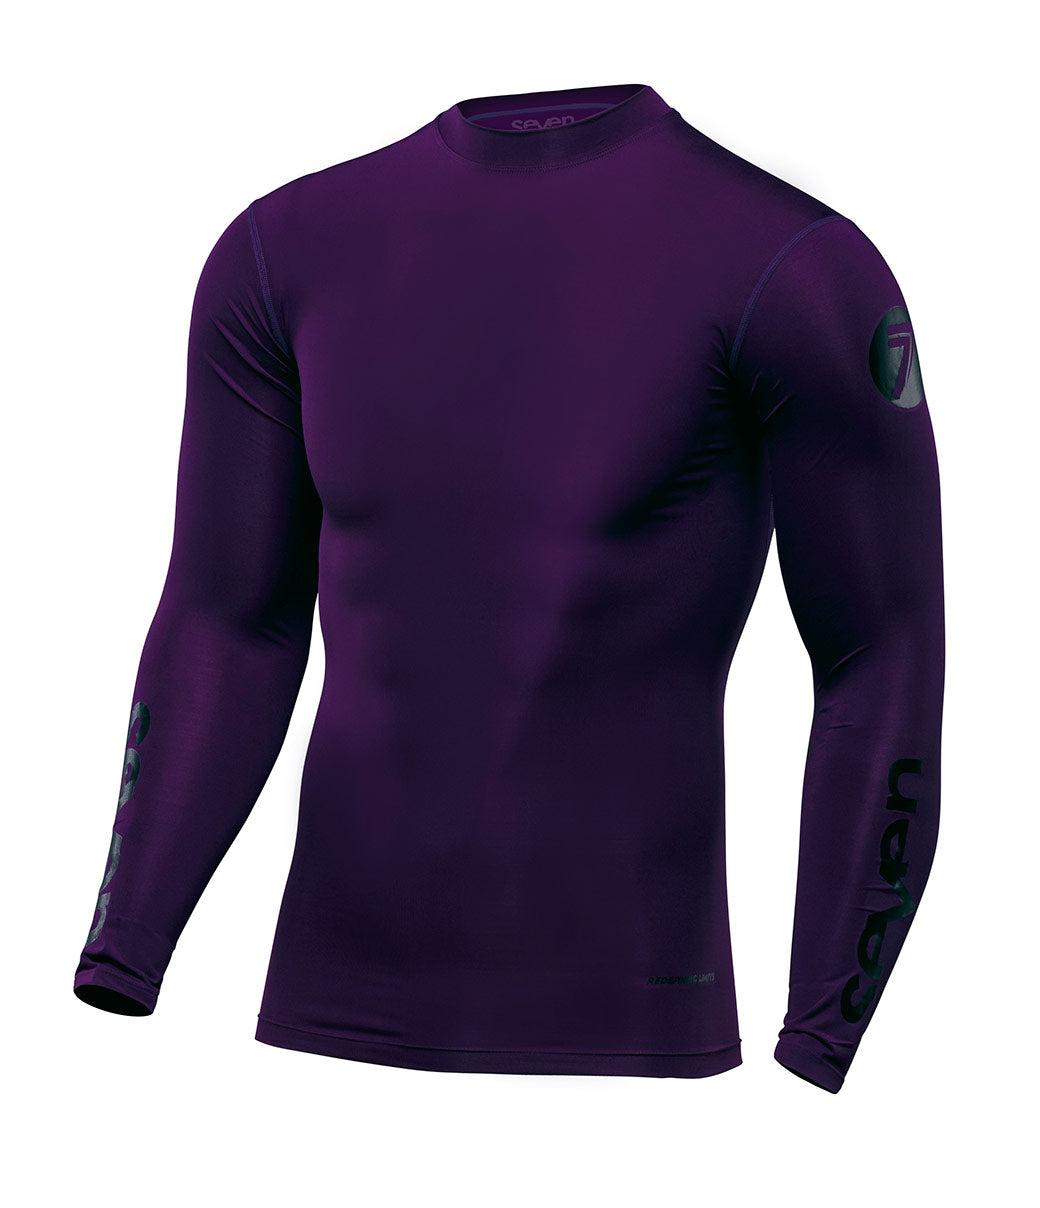 Purple | Sheer Jersey (10-Yard Lot @ $2.99/Yard) - SKU 4309 #S157